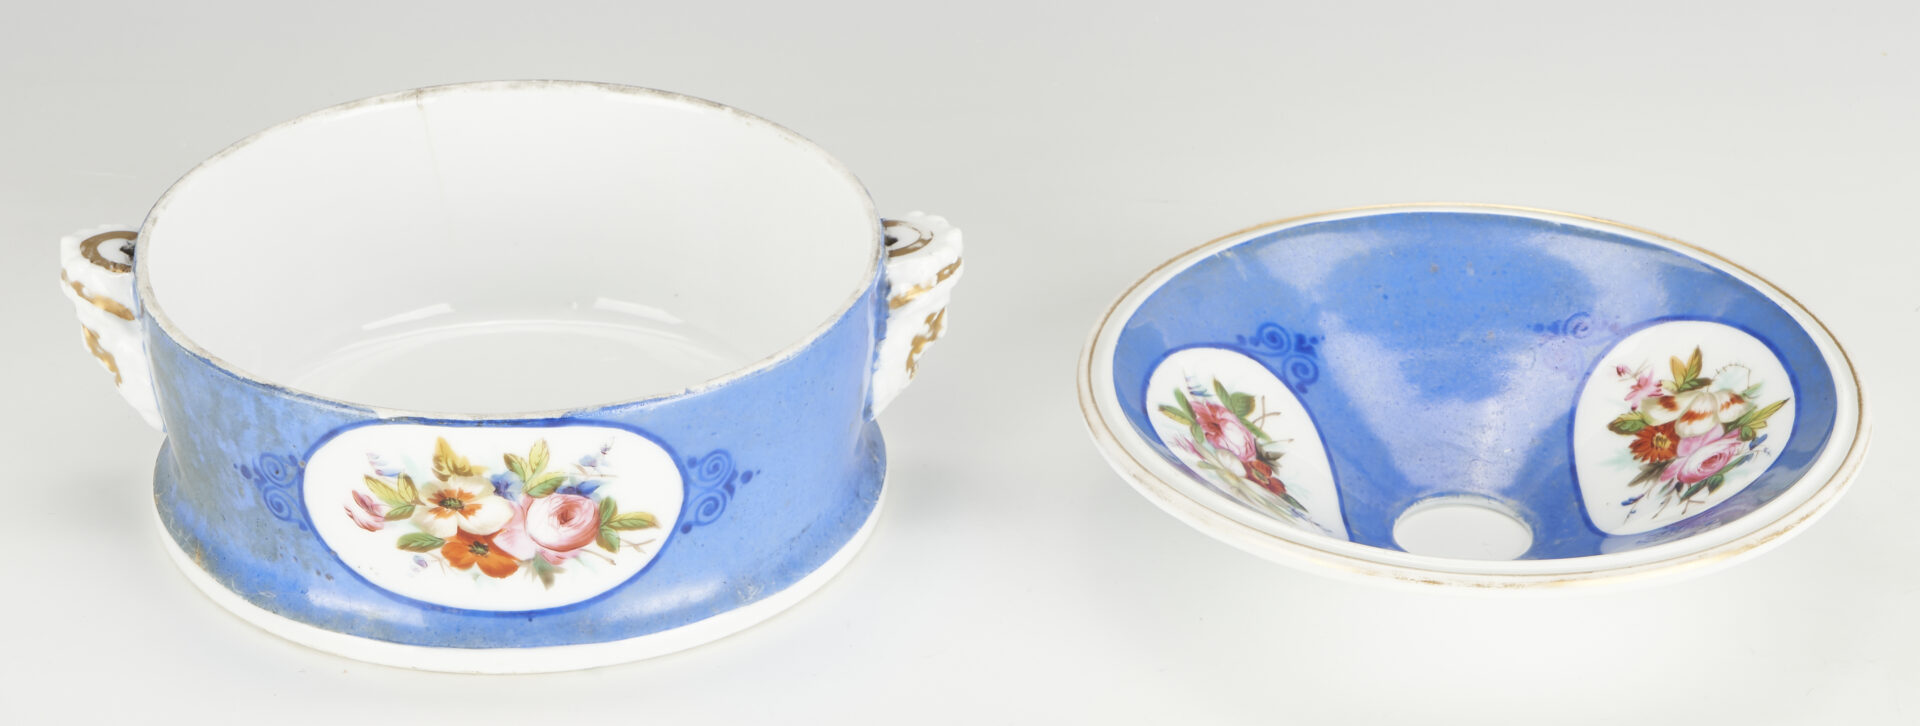 Lot 57: 10 French Old Paris Porcelain Pieces Items